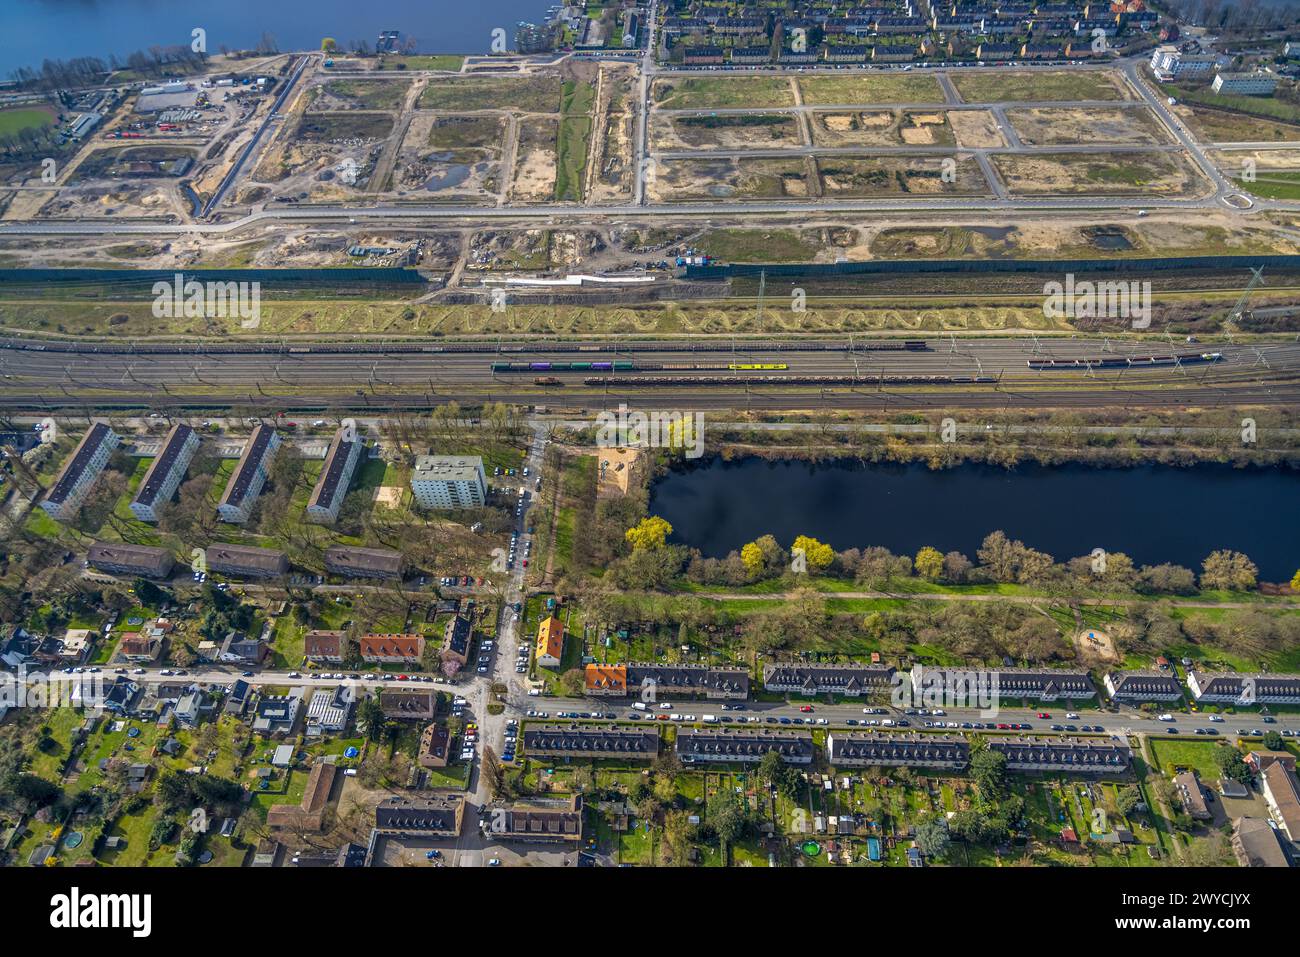 Luftaufnahme, Baustelle für geplante Duisburger Wohnquartier am ehemaligen Rangierbahnhof Wedau, an der Sechs-Seen-Platte, Wedau, Duisbur Stockfoto